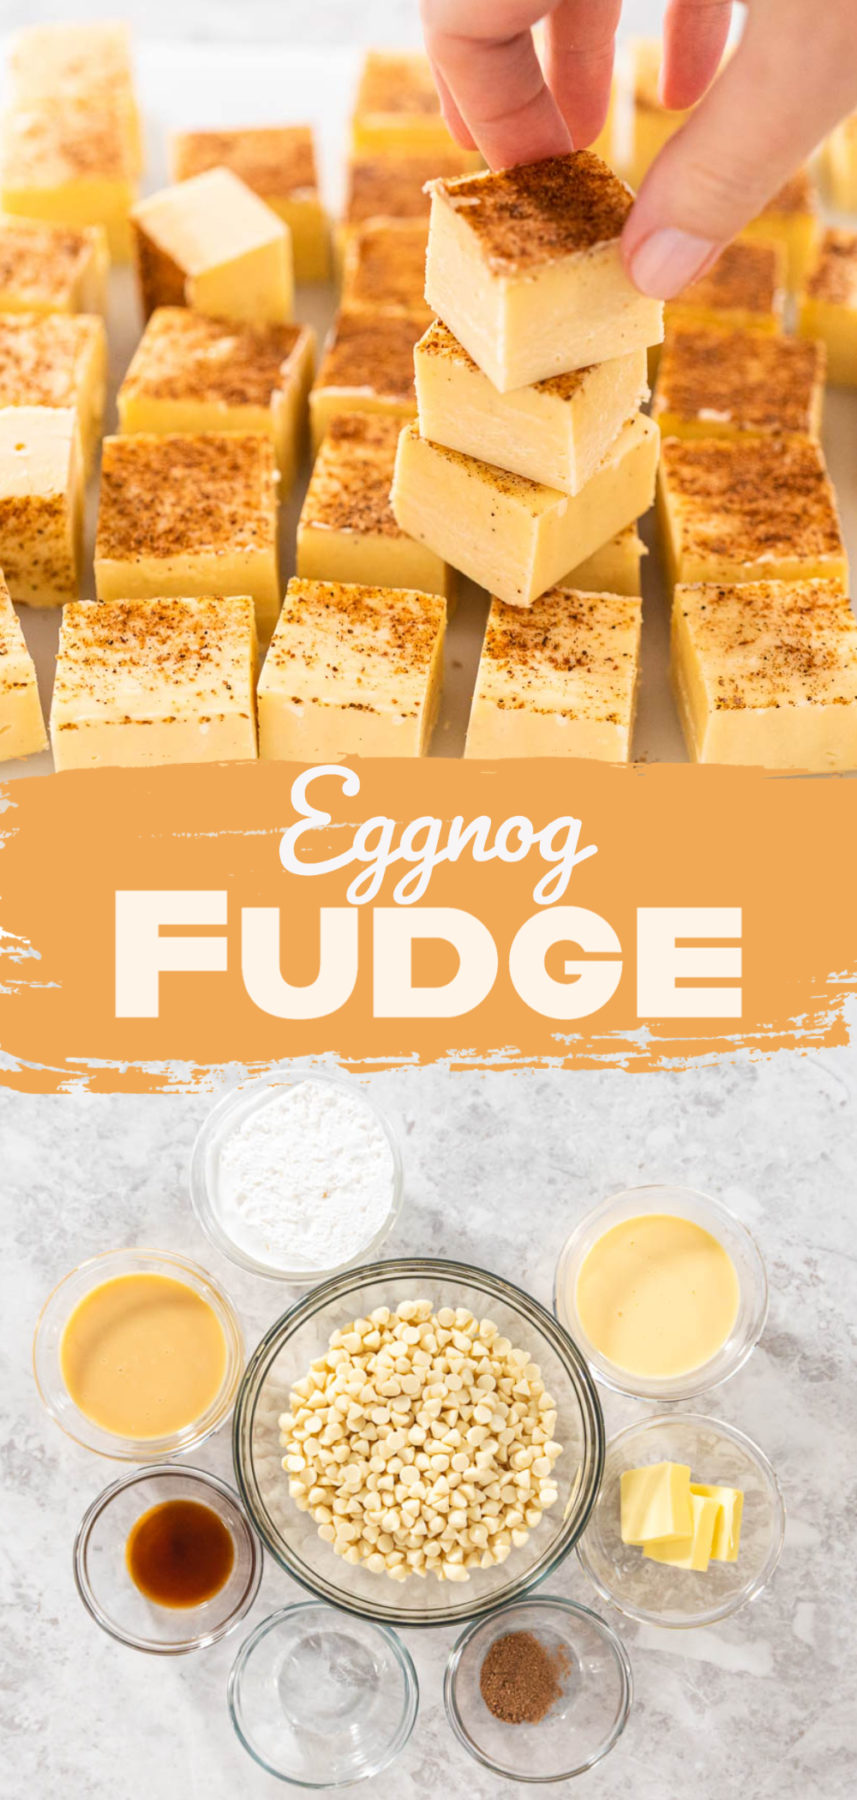 Eggnog Fudge